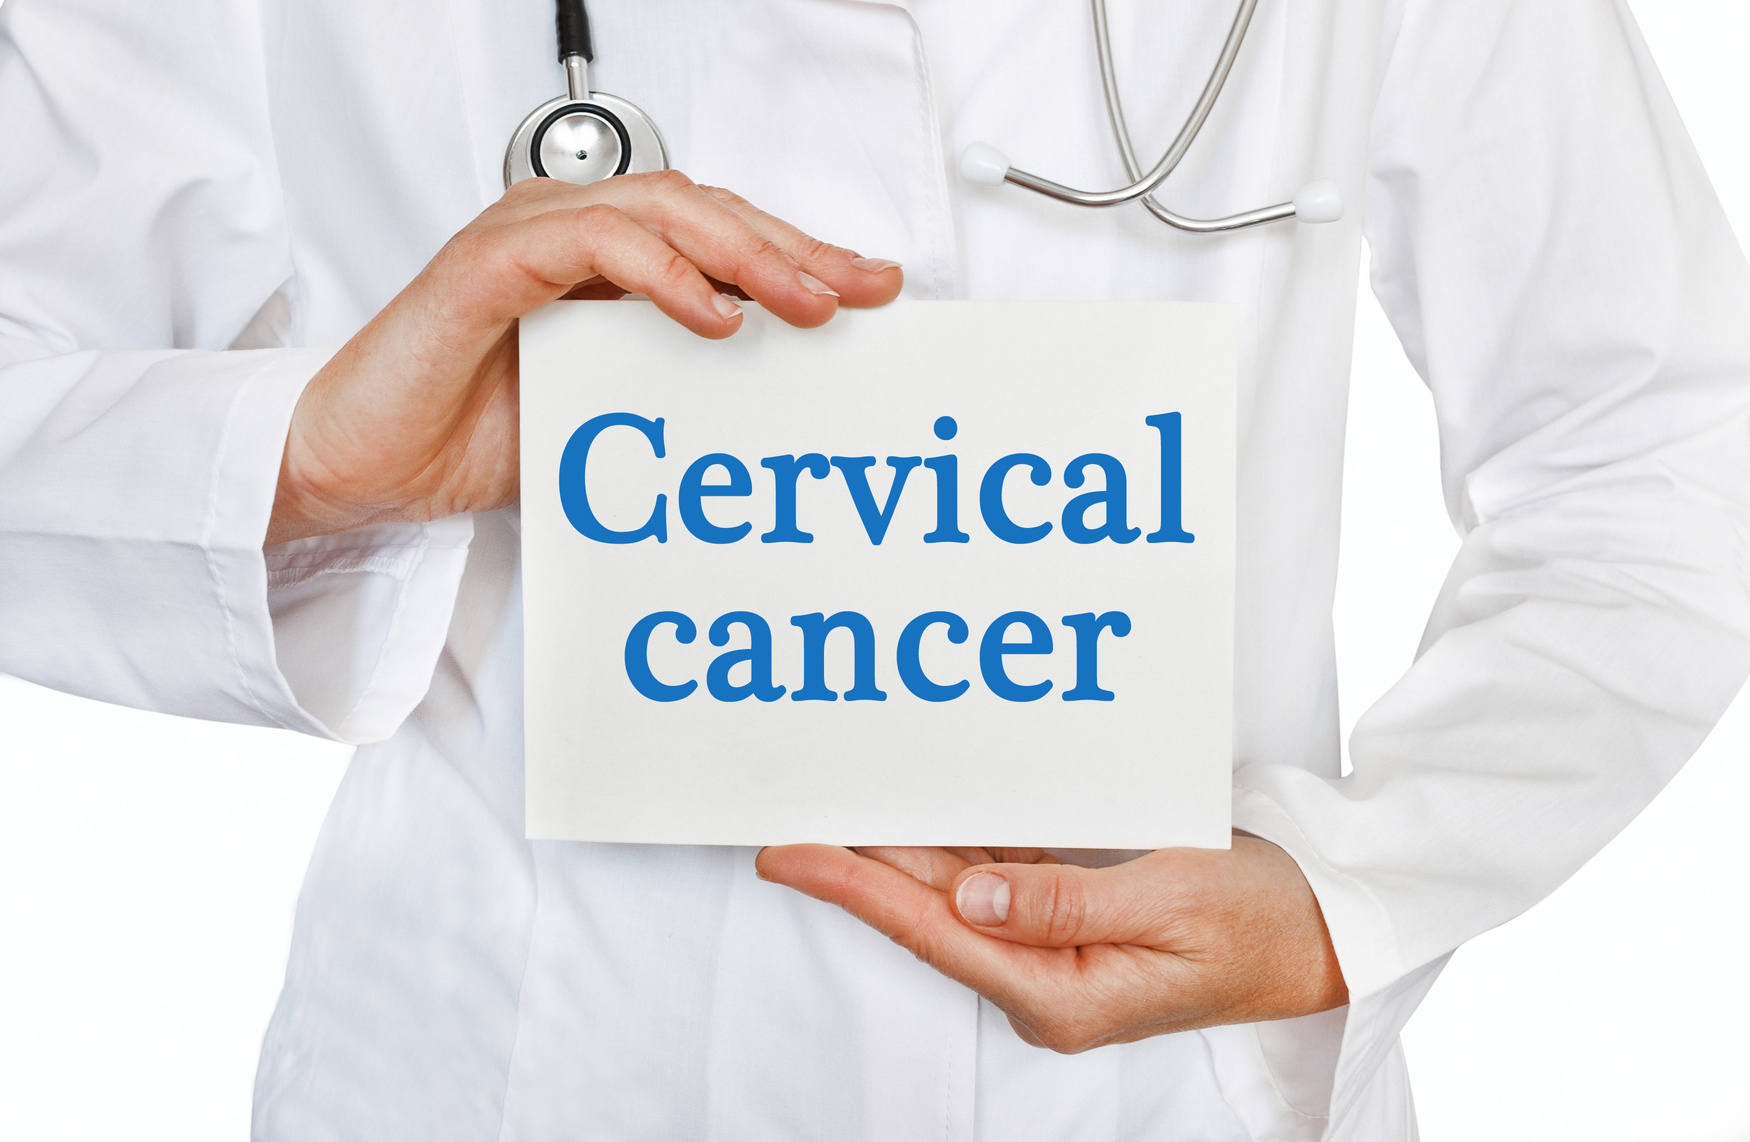 Cervical cancer card in hands of Medical Doctor